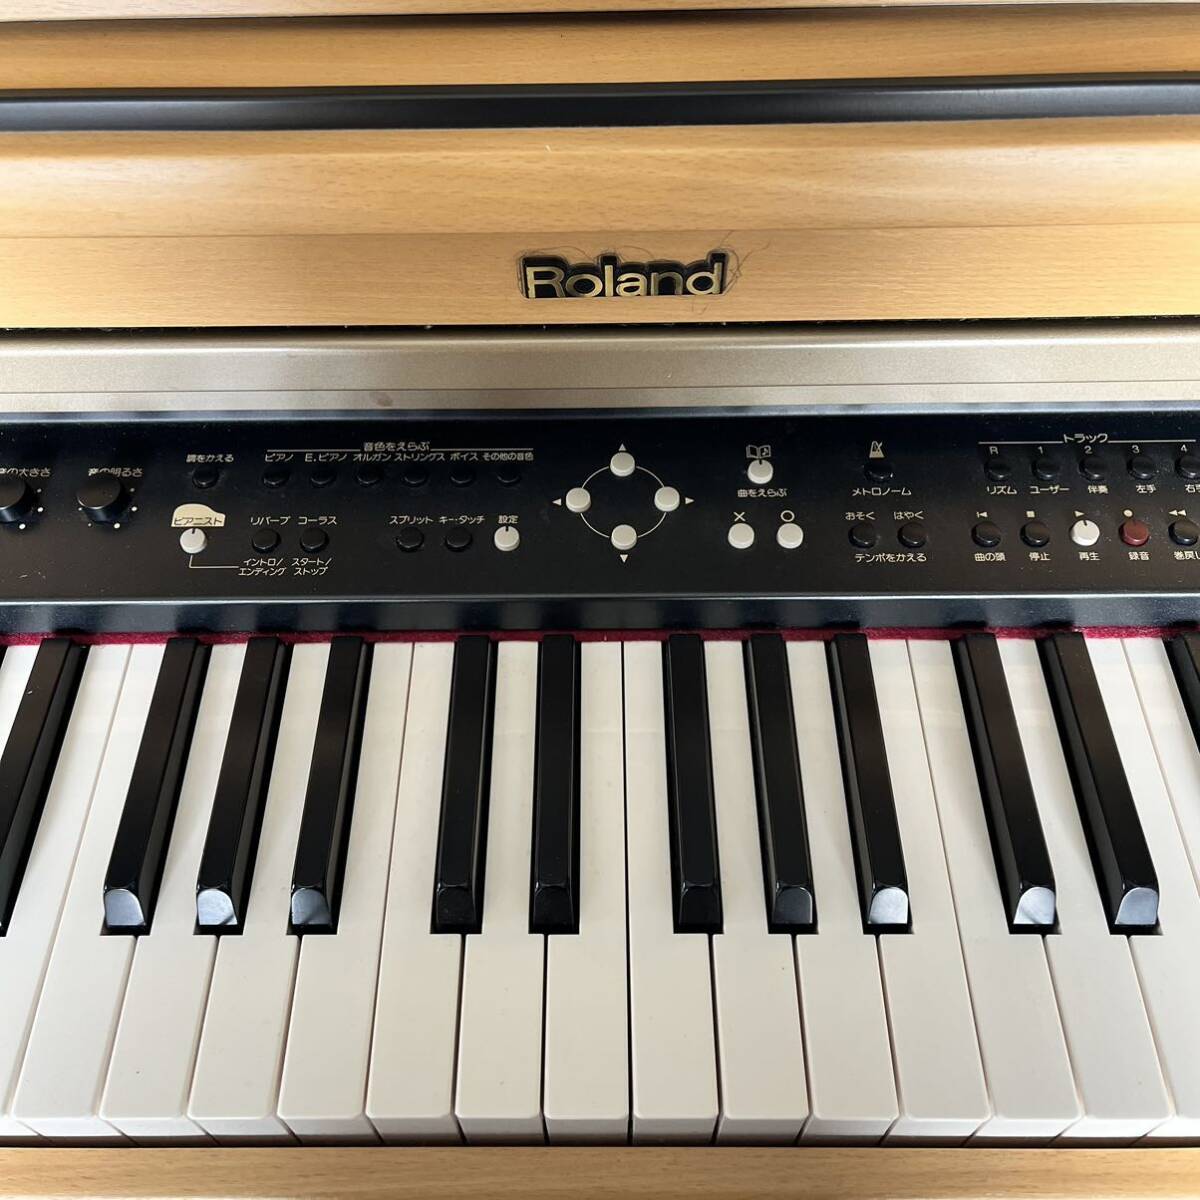 ☆【Roland HPI-5-AD】 Саппоро  непосредственная передача товара из рук в руки   только   Roland   электронное пианино    проверено на работоспособность  88 клавиатура   клавиатура  музыкальный инструмент   цифровая  пианино   текстура древесины    натуральный 